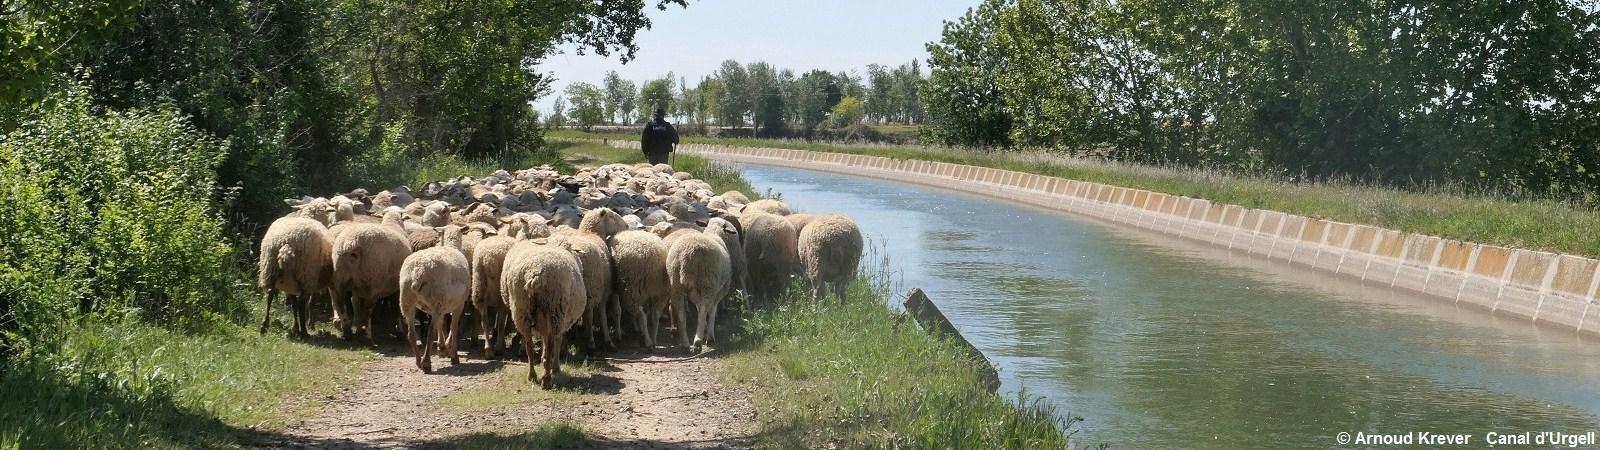 22. 18CAT (529) Canal d'Urgell, kudde schapen